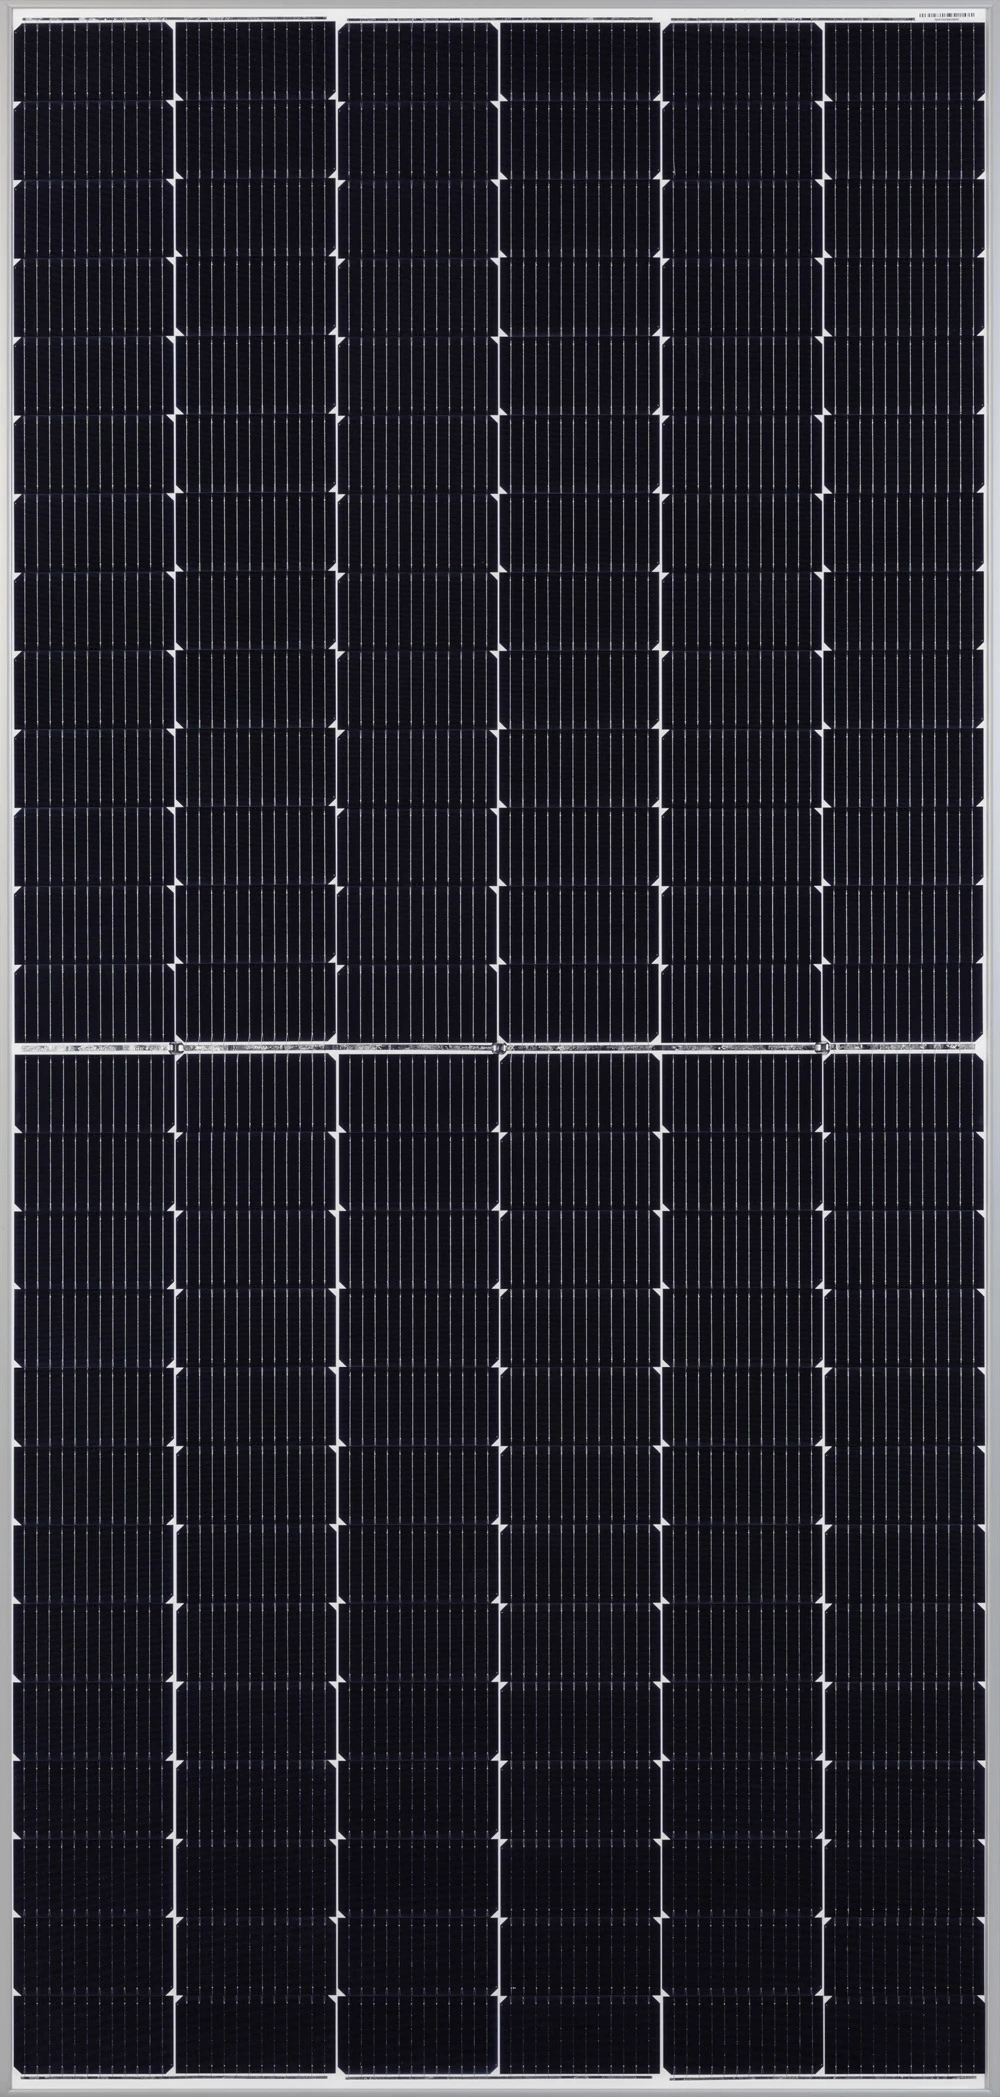 Q Cells Duo XL-G10 480w Bi-Facial Solar Panel